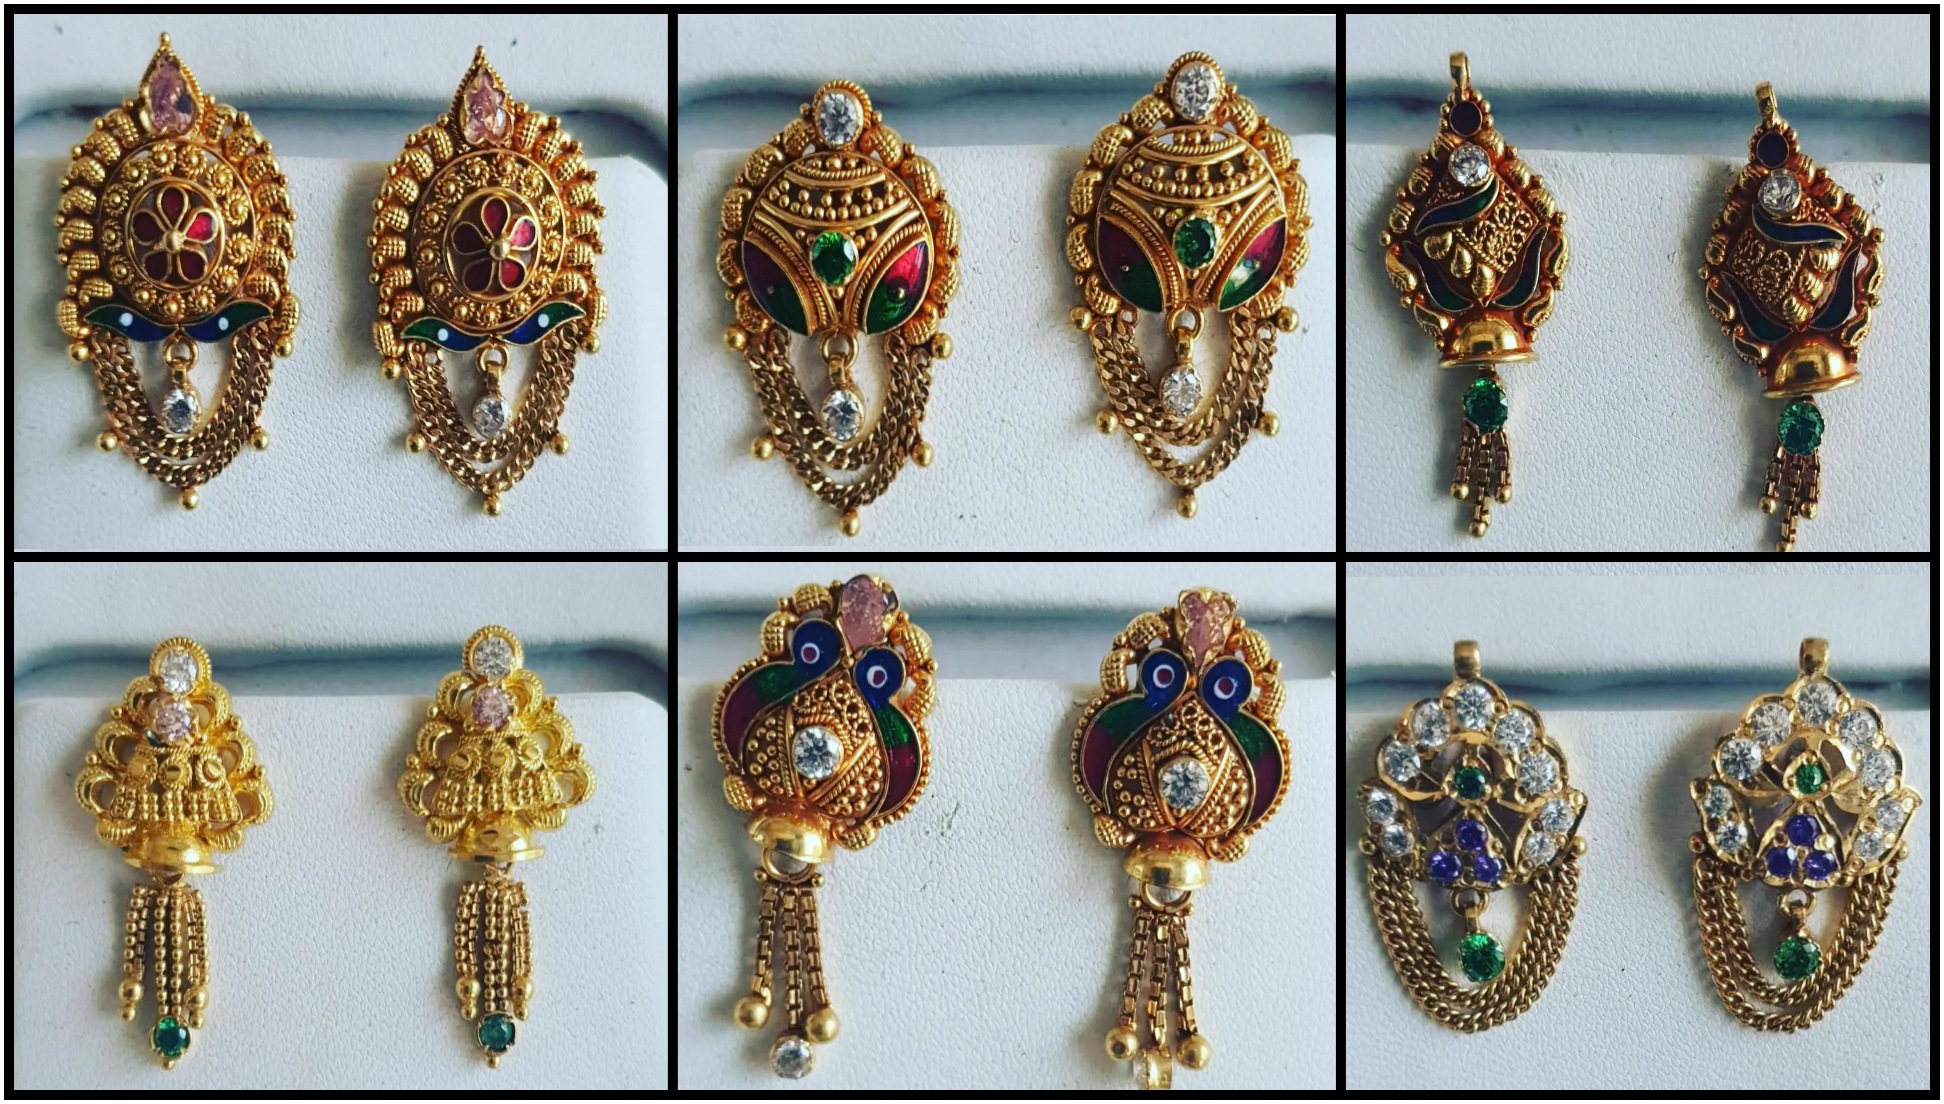 Gold earrings 3 gram price | Gold earrings designs 2022 - YouTube